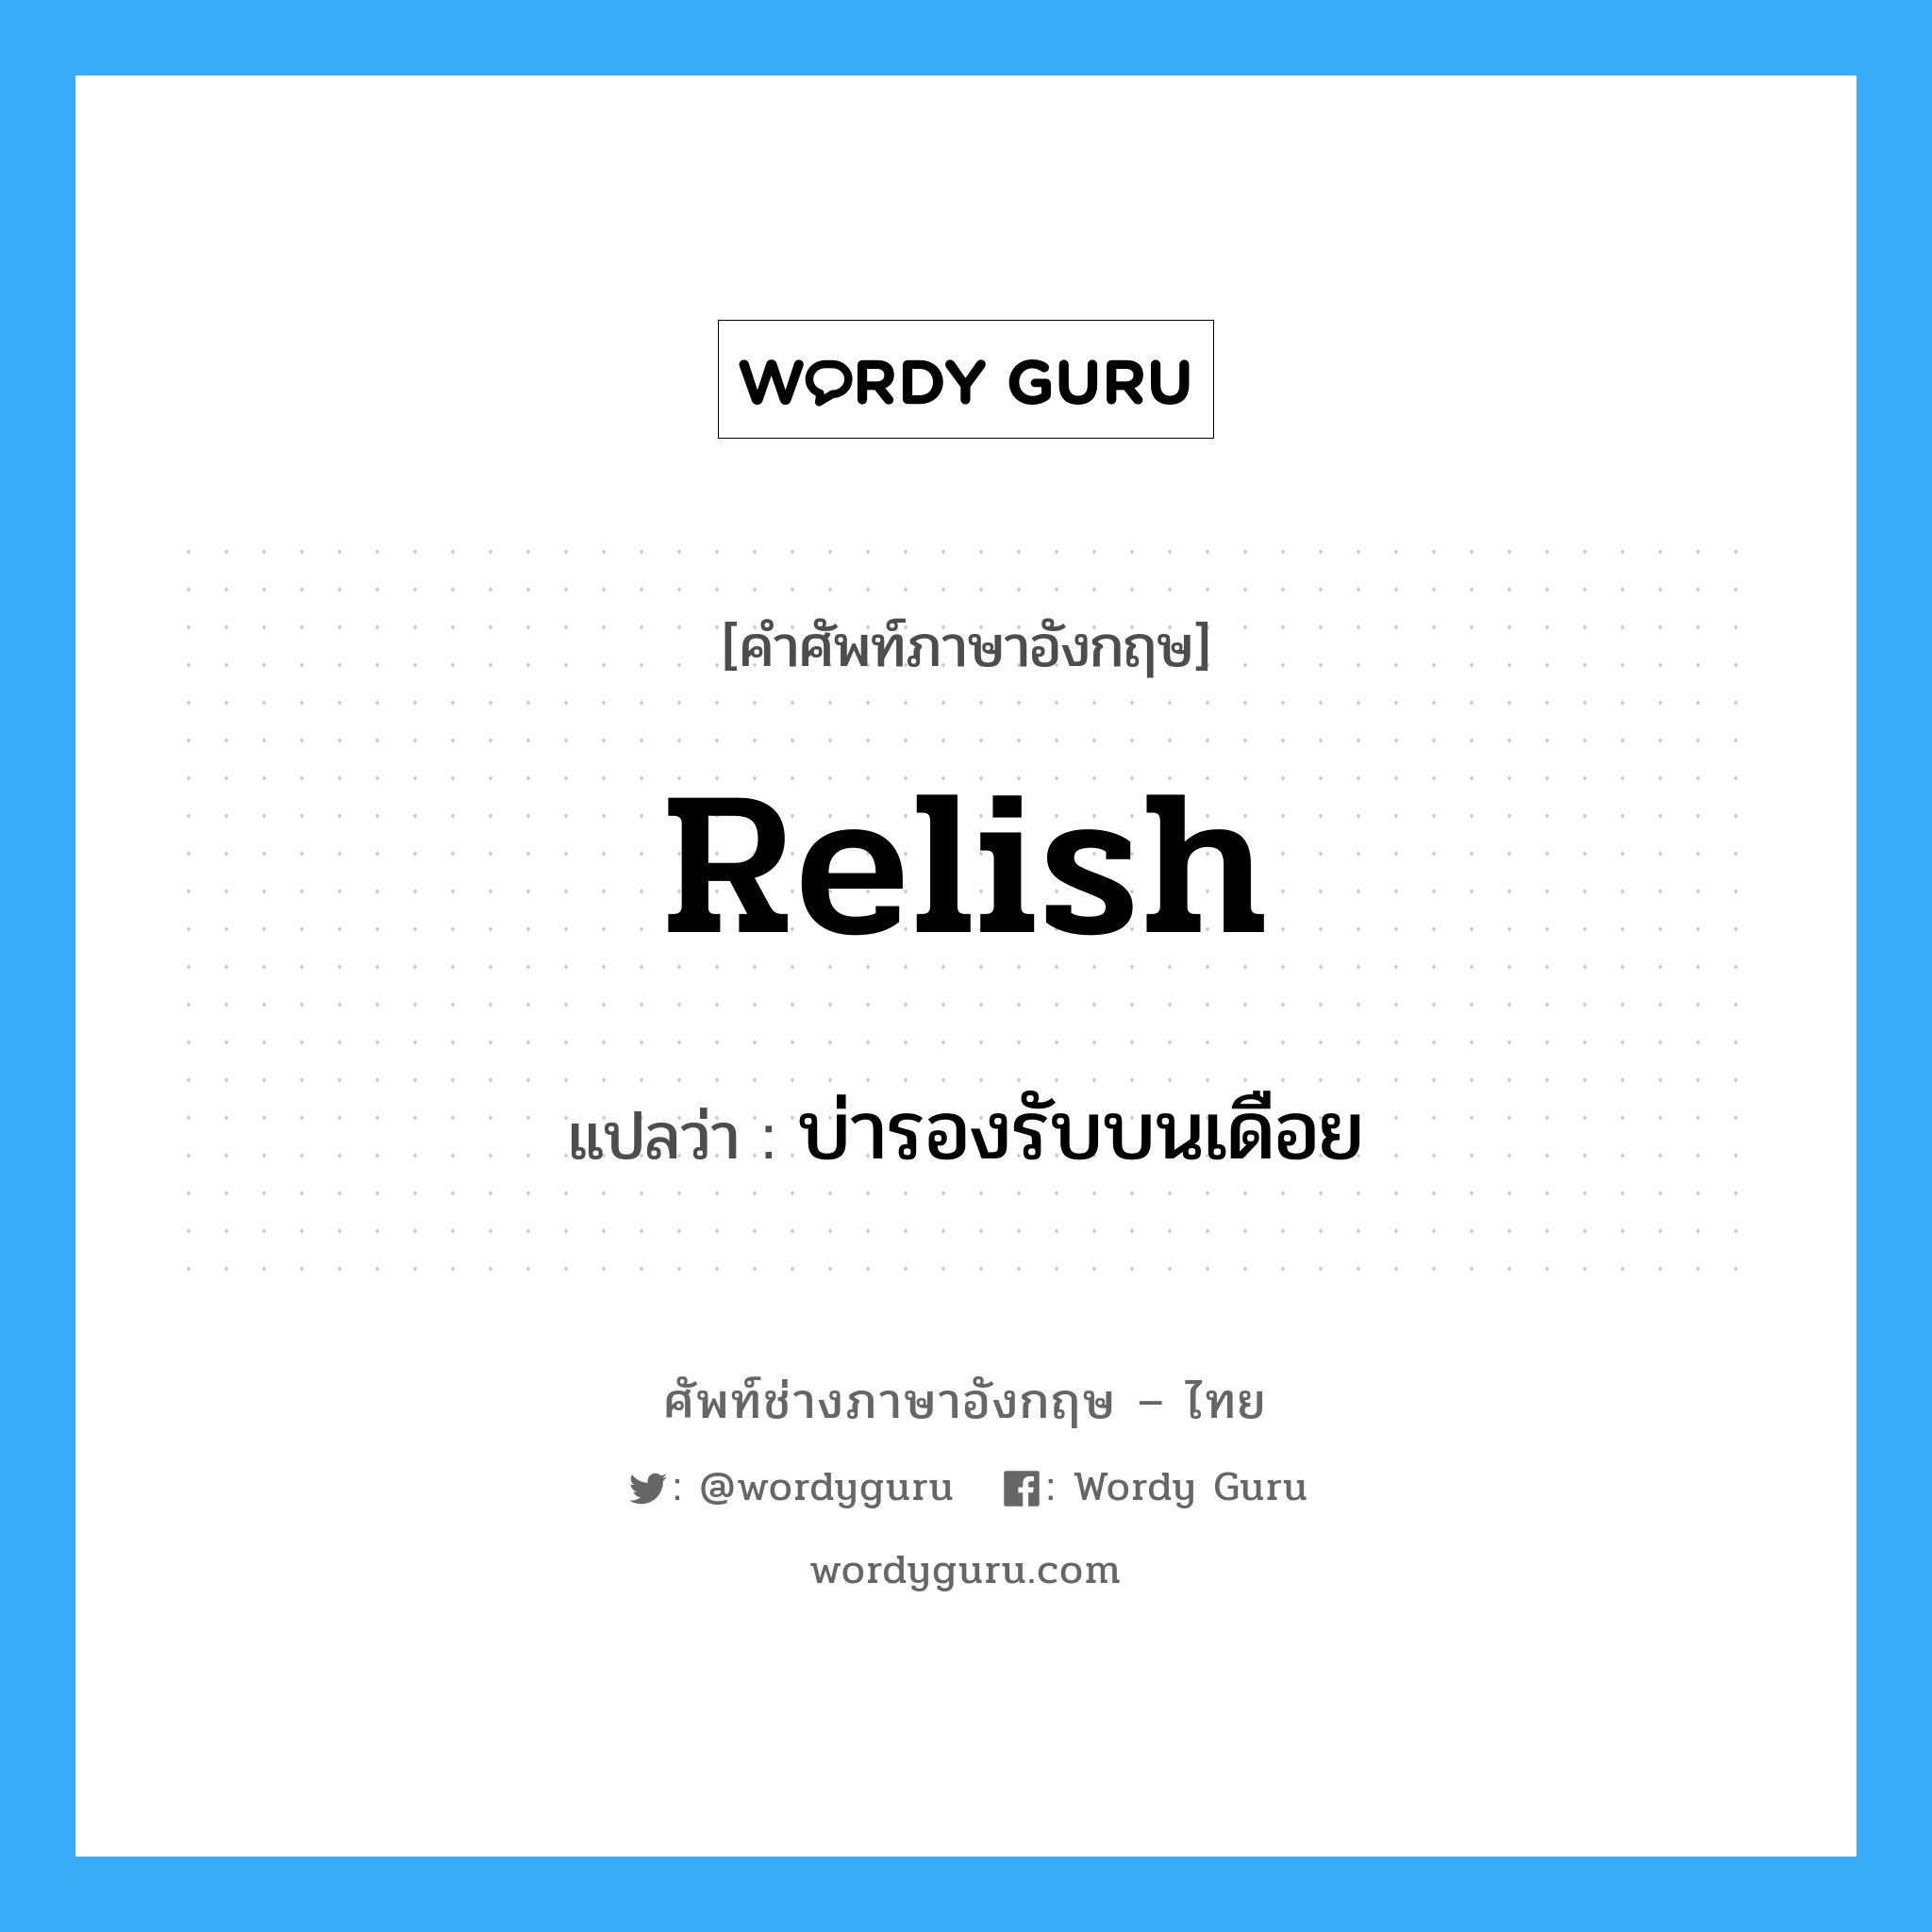 บ่ารองรับบนเดือย ภาษาอังกฤษ?, คำศัพท์ช่างภาษาอังกฤษ - ไทย บ่ารองรับบนเดือย คำศัพท์ภาษาอังกฤษ บ่ารองรับบนเดือย แปลว่า relish